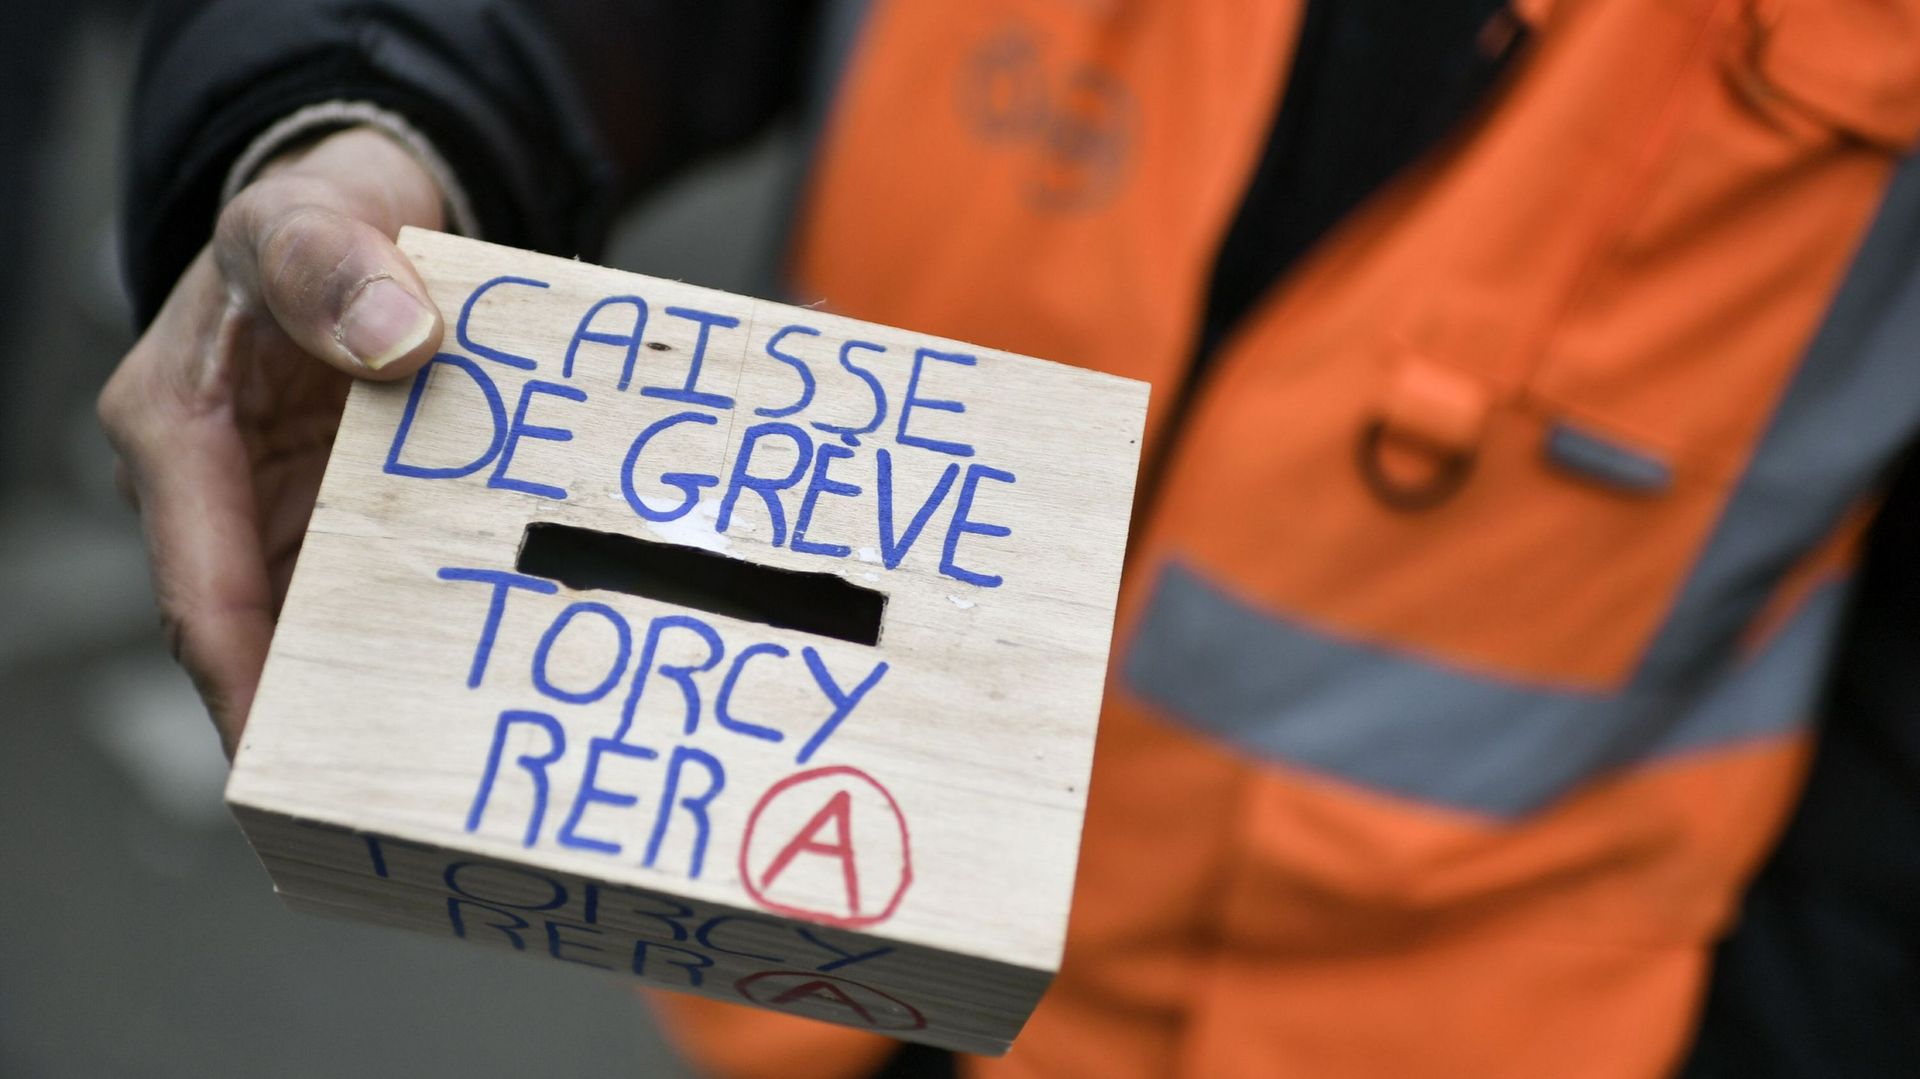 CNE et FGTB participeront aux caisses de grève des syndicats français